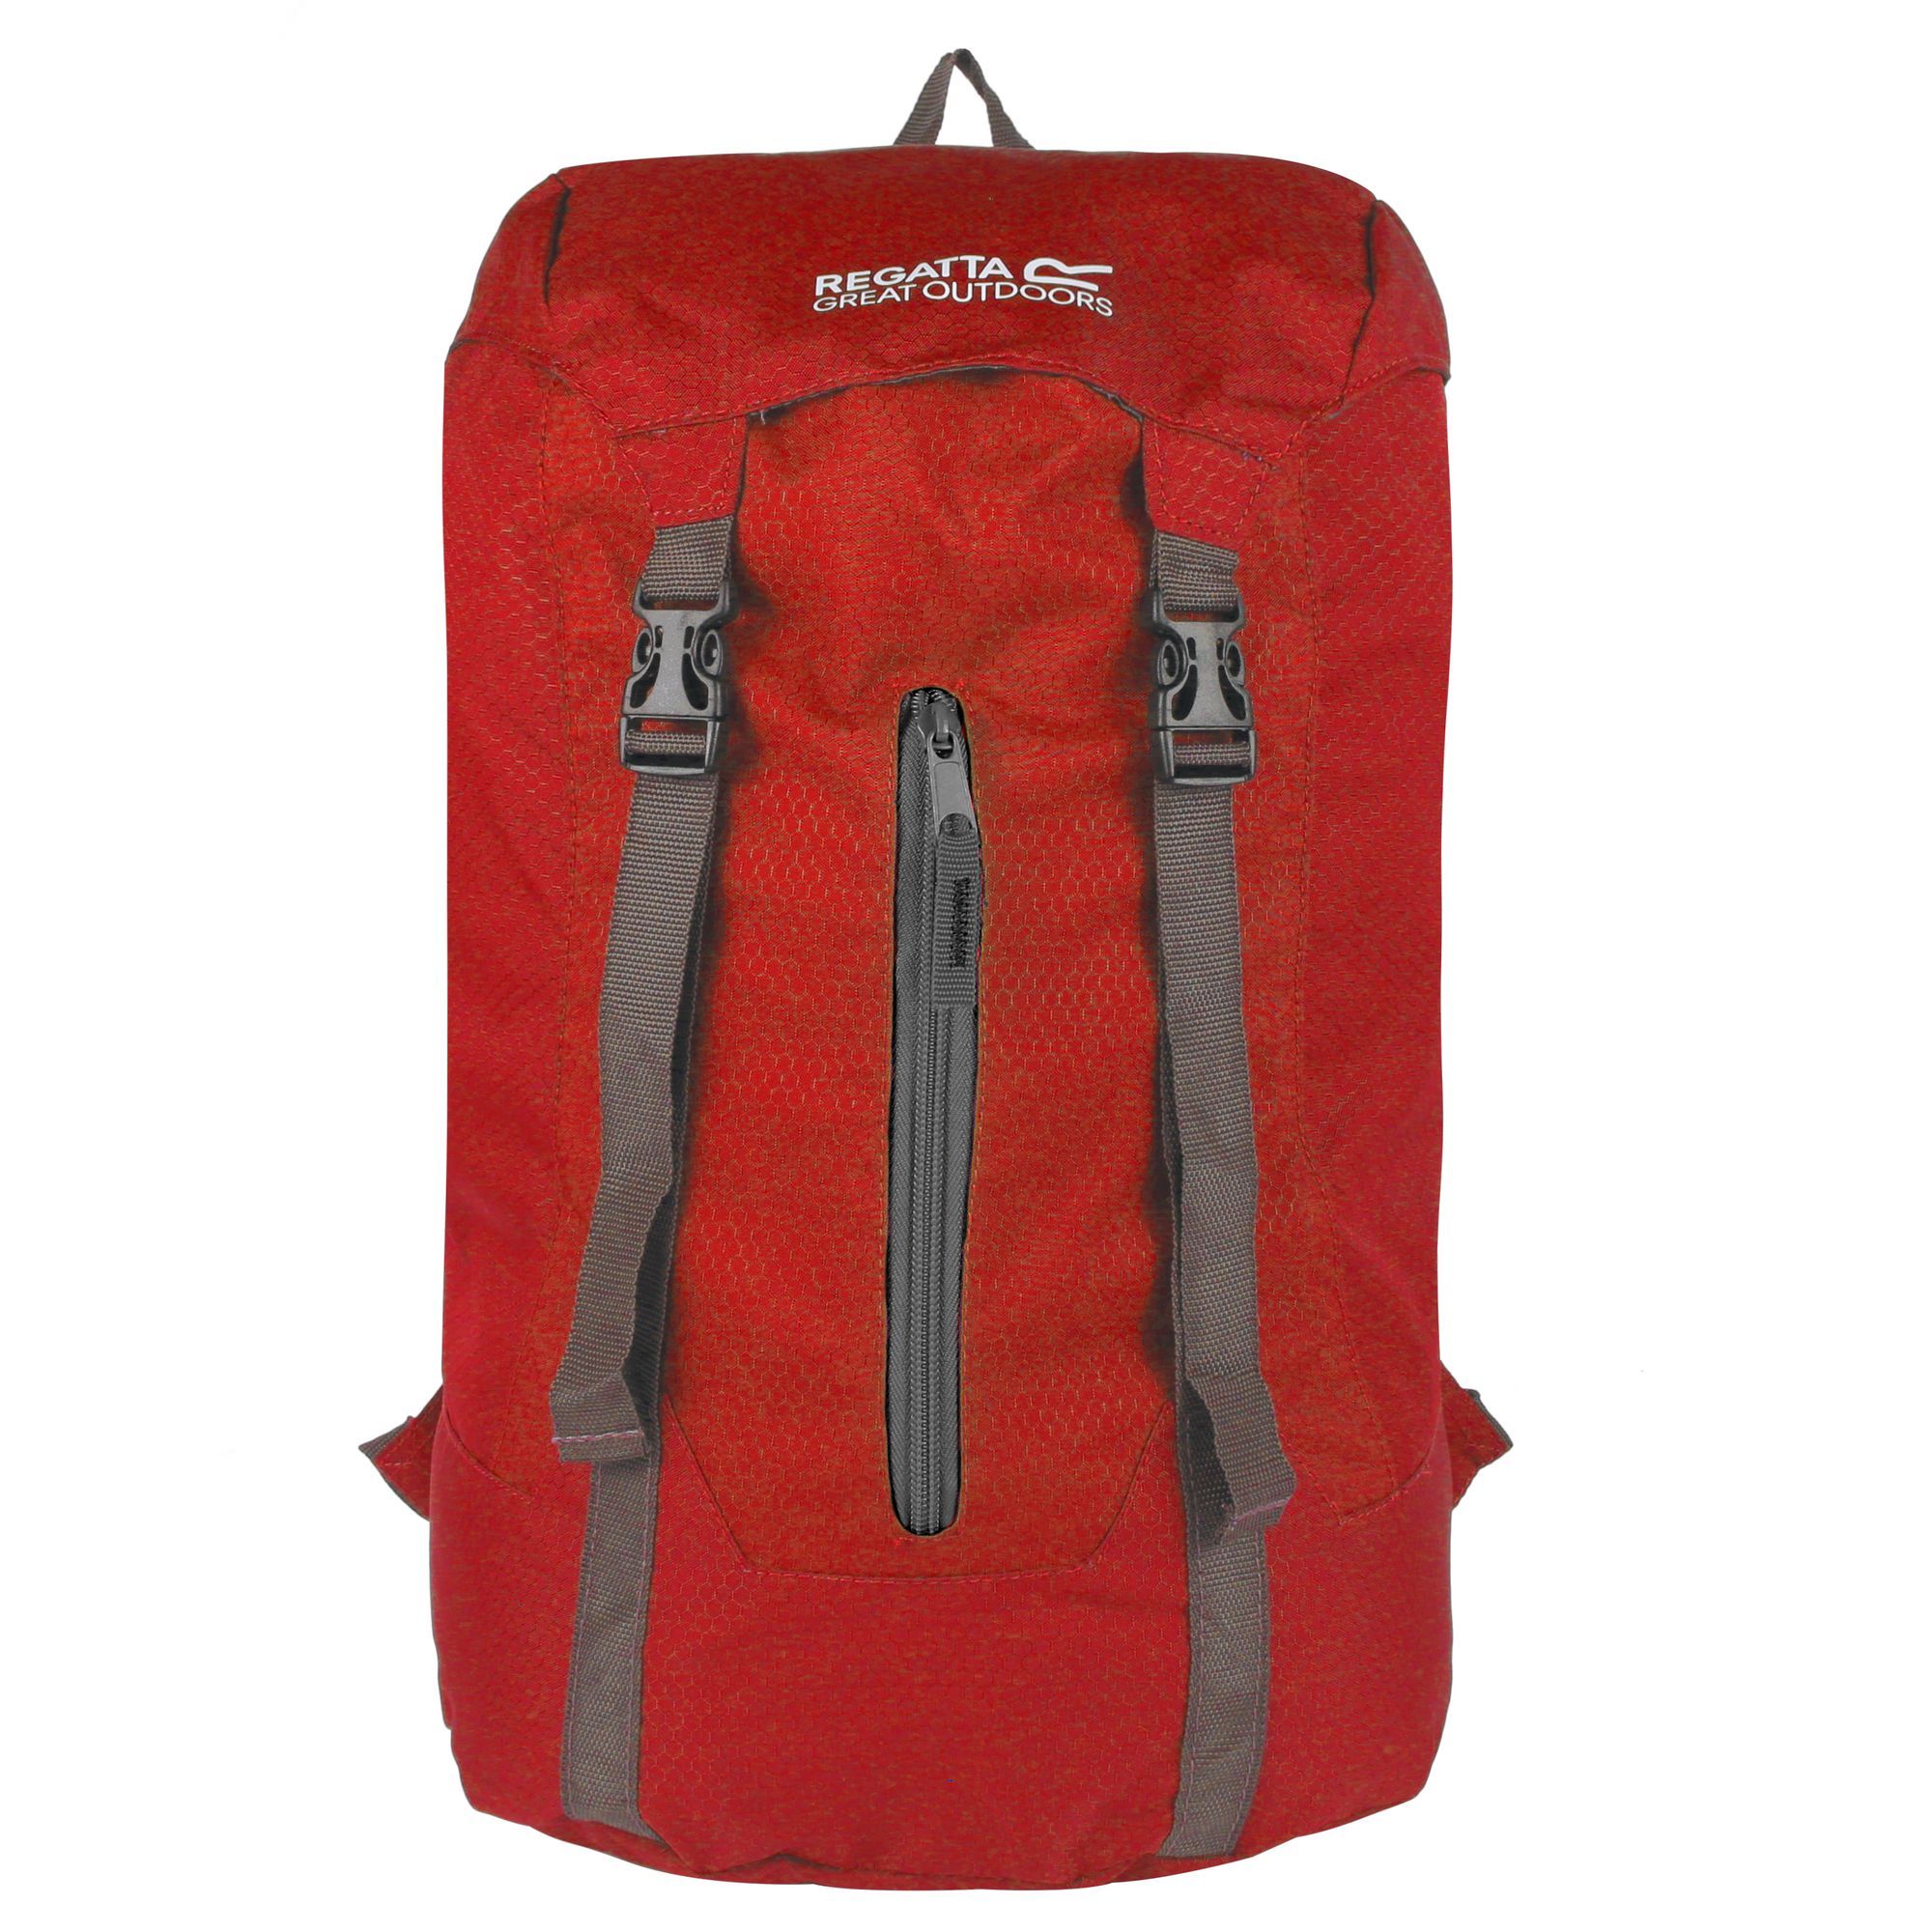 Great Outdoors Easypack Packaway Rucksack/backpack (25 Litros) Regatta Easypack Ii